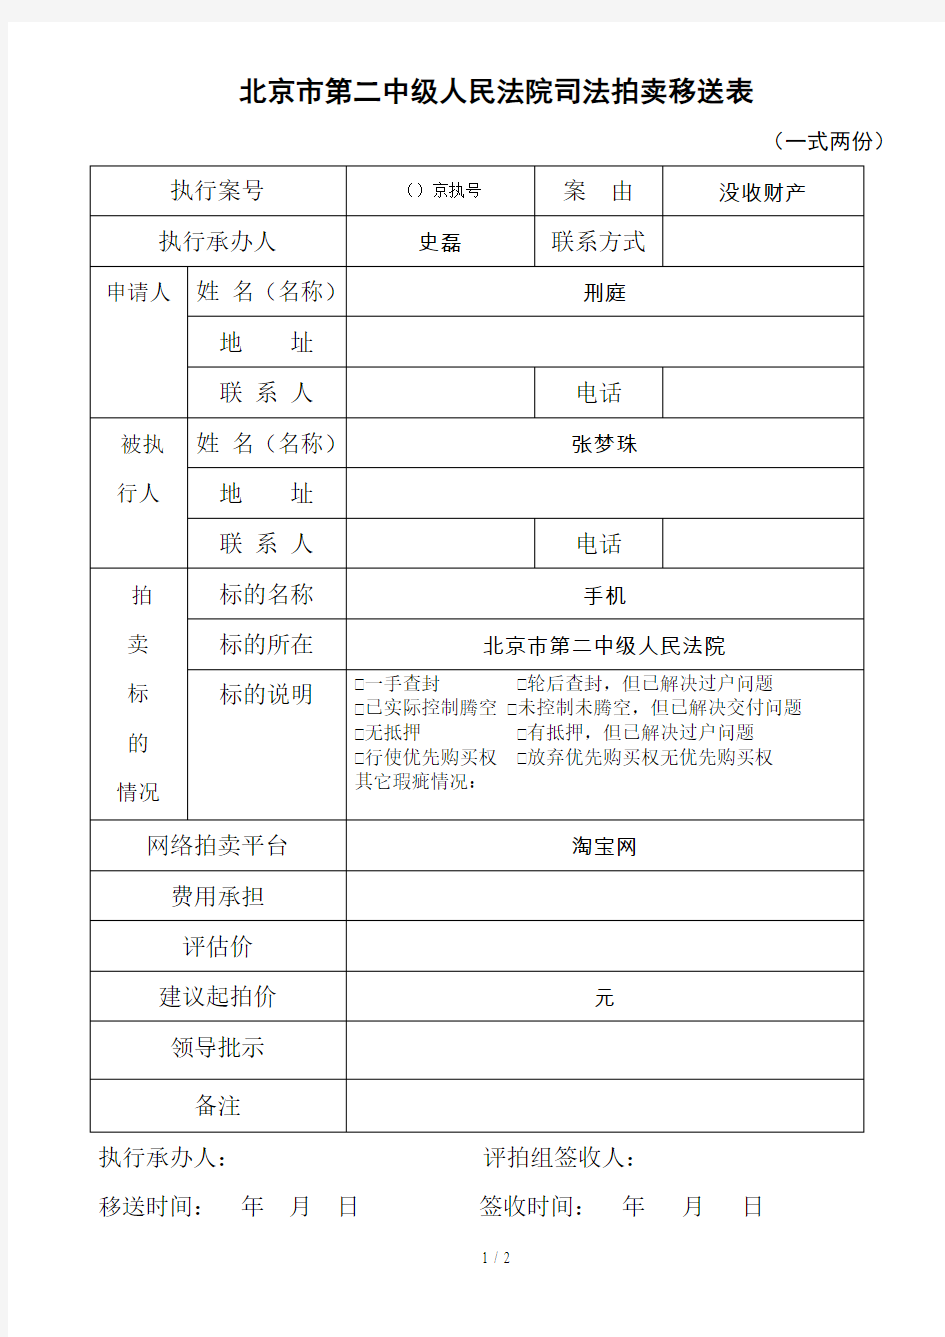 北京市第二中级人民法院司法拍卖移送表